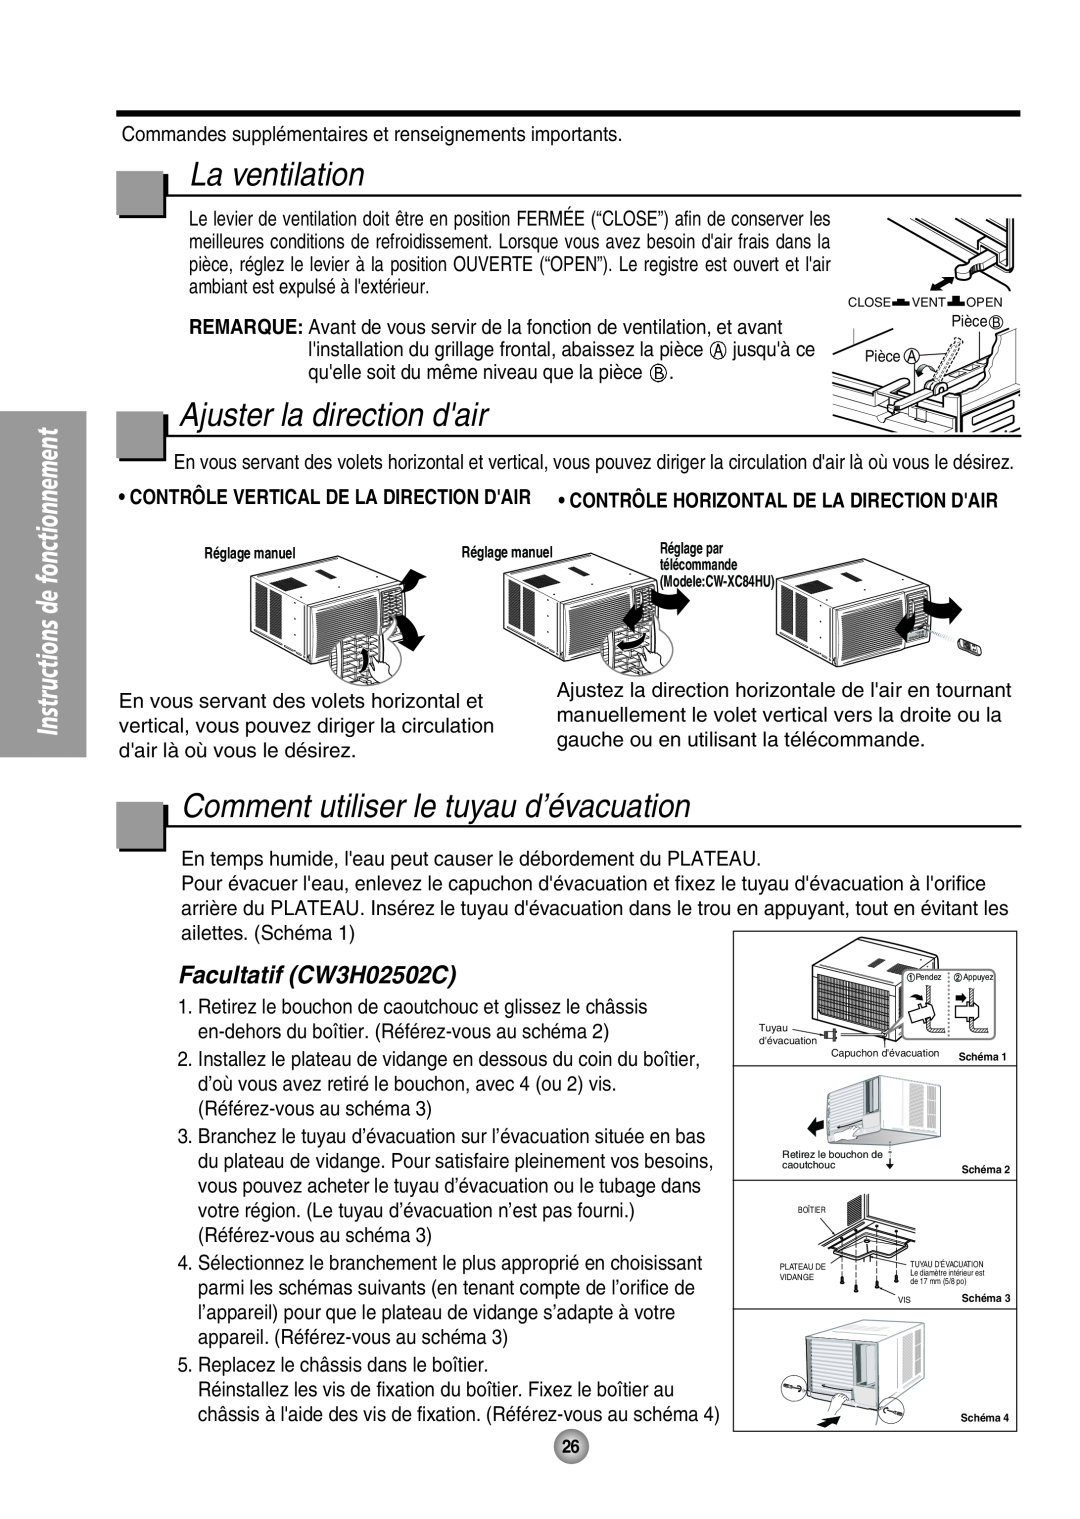 Panasonic CW-XC64HU manual La ventilation, Ajuster la direction dair, Comment utiliser le tuyau d’évacuation 